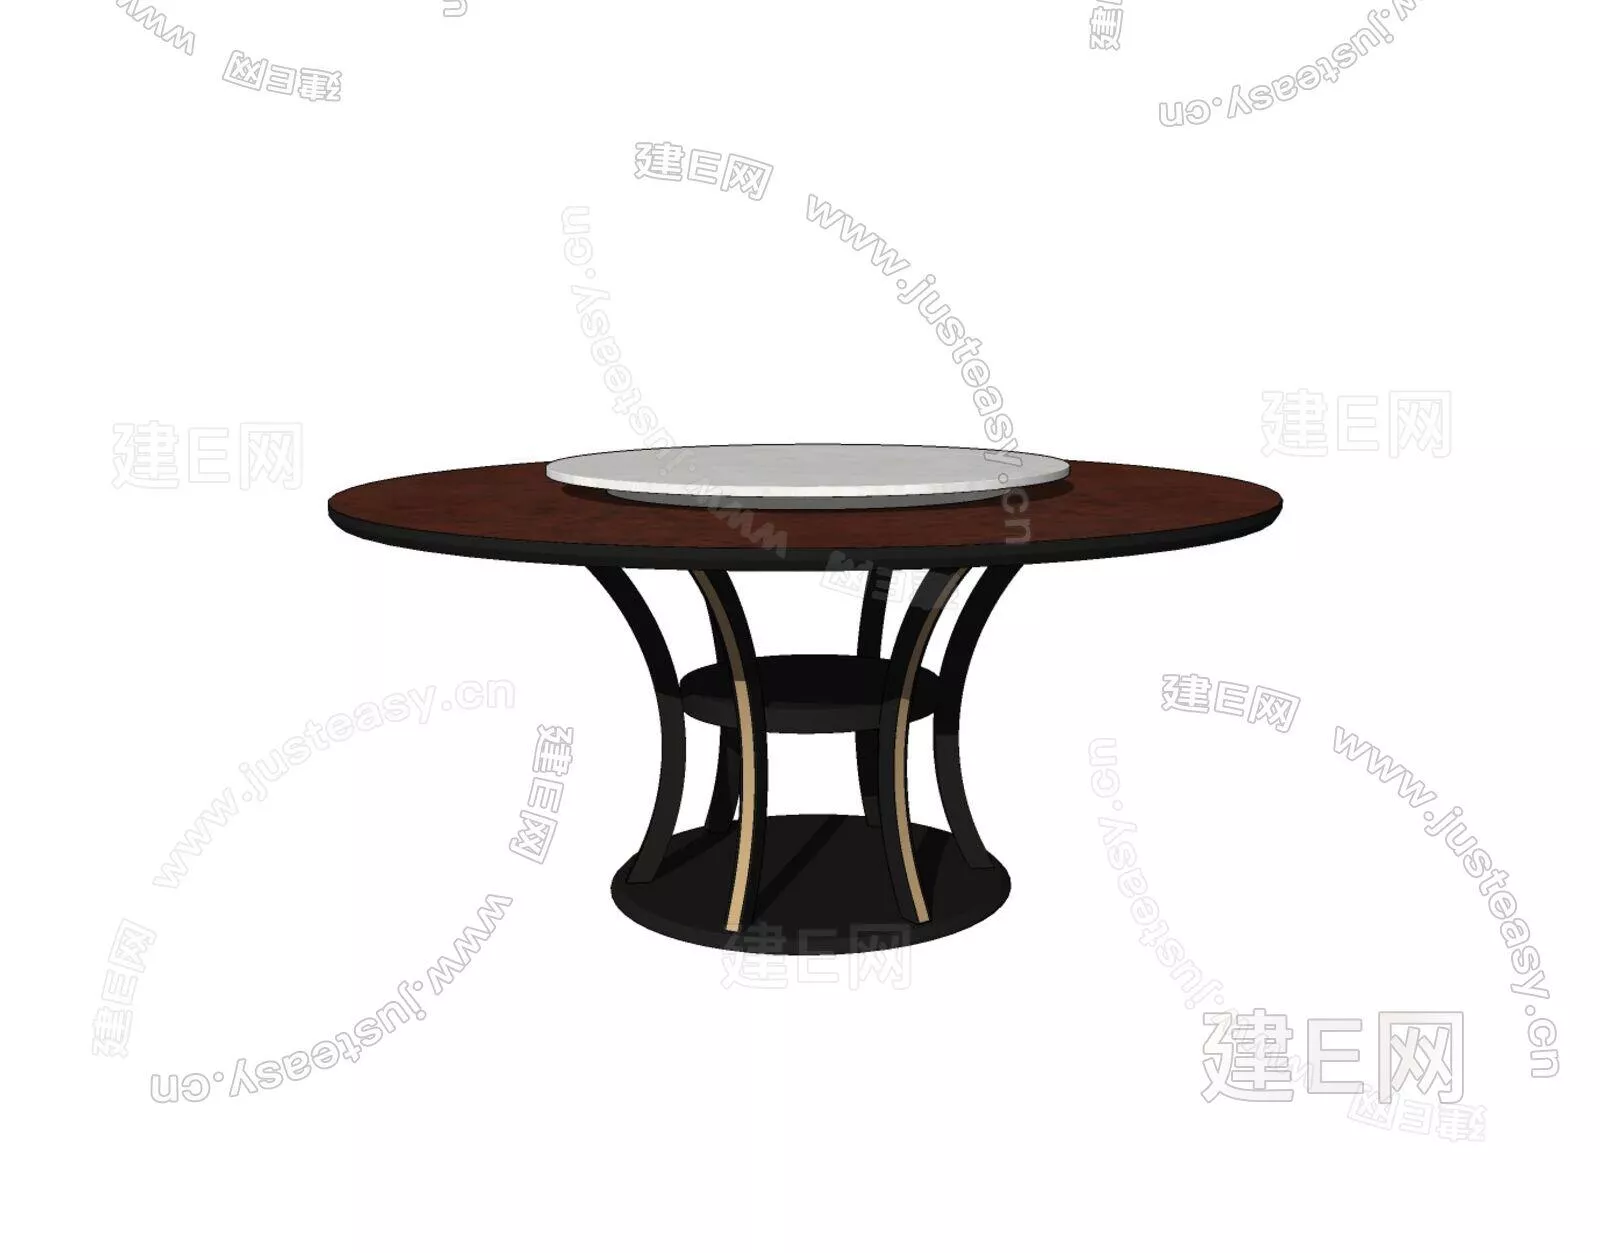 EUROPE DINING TABLE SET - SKETCHUP 3D MODEL - ENSCAPE - 111035784